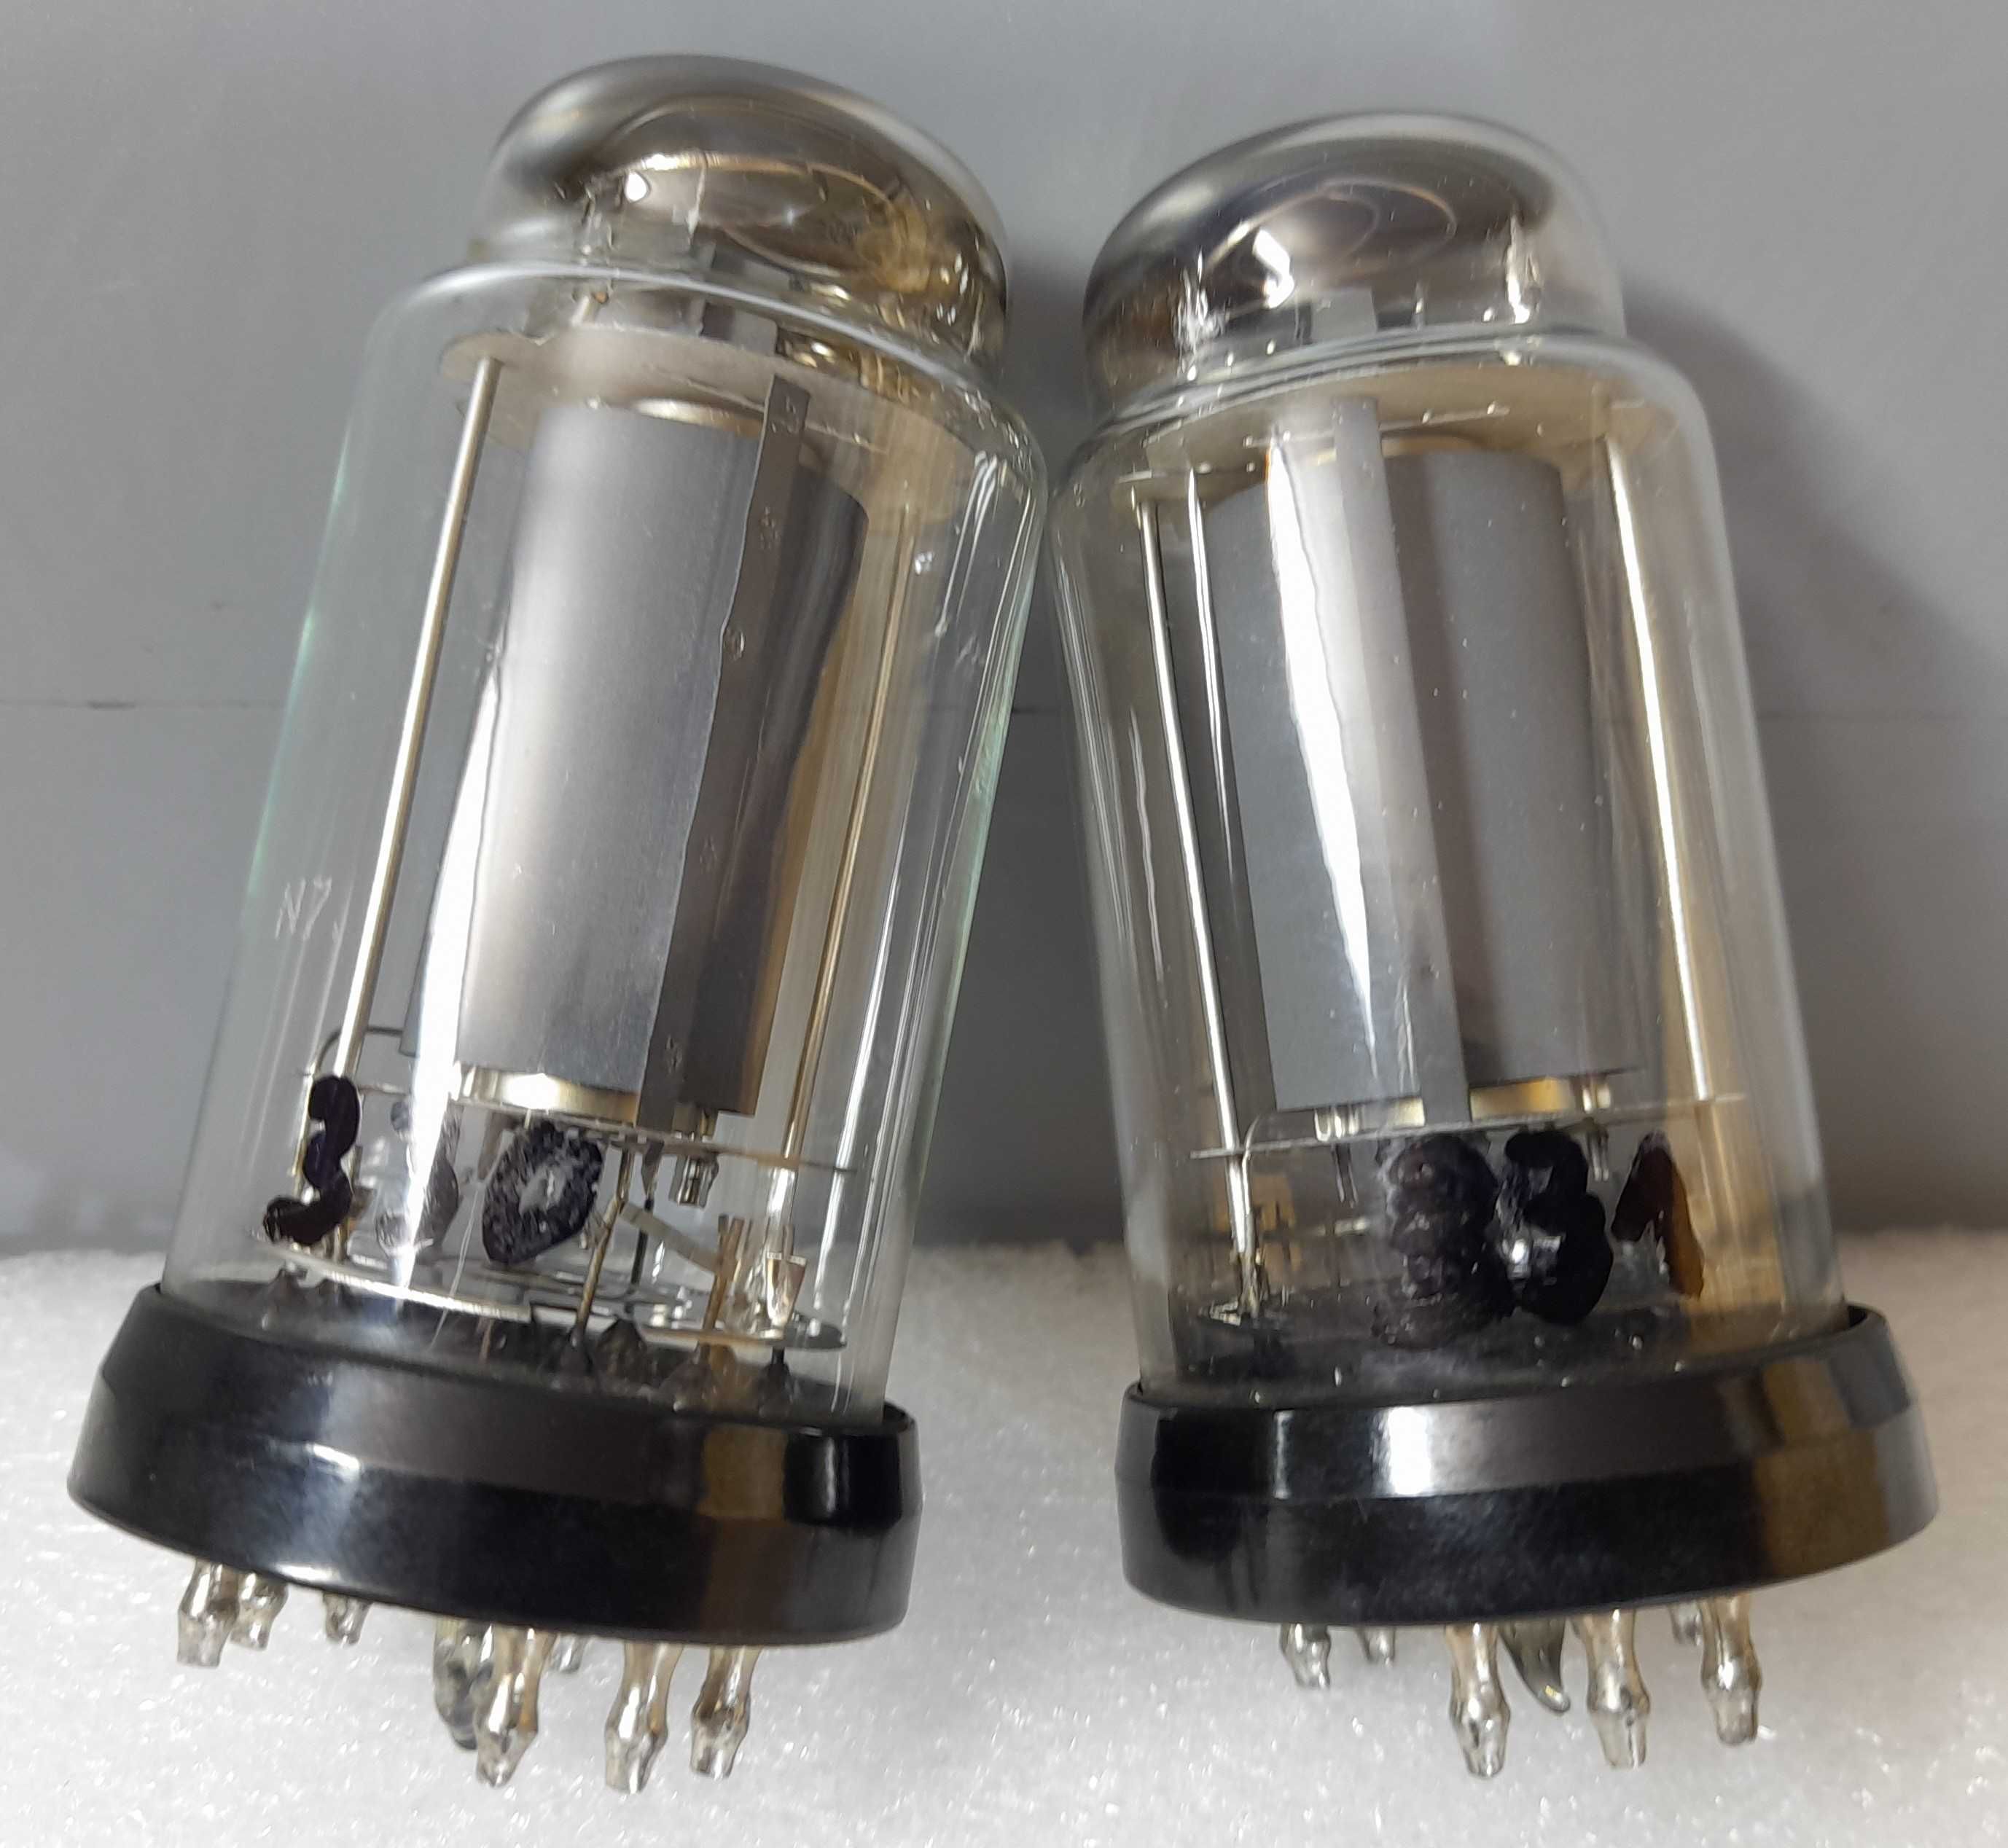 Lampy elektronowe unikat EYY53 Telefunken z lat 50'tych